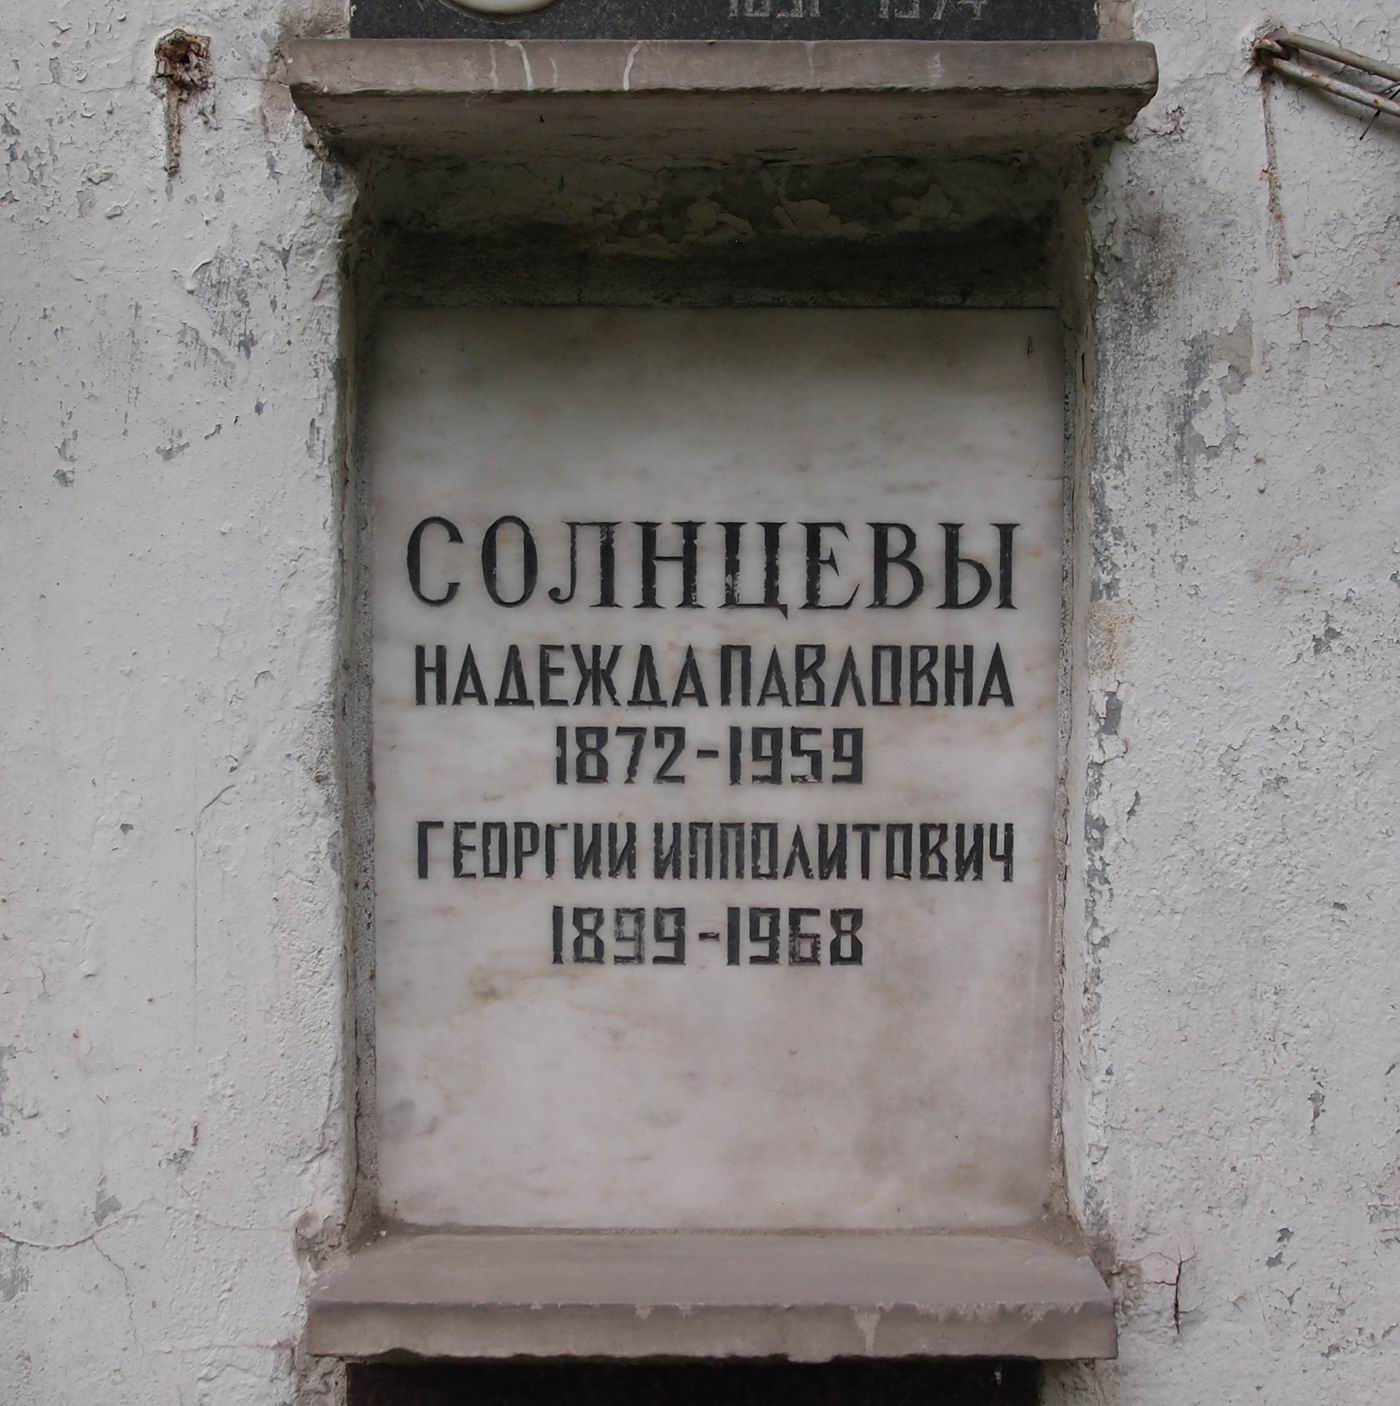 Плита на нише Солнцевой Н.П. (1872–1959), на Новодевичьем кладбище (колумбарий [38]–2–3).